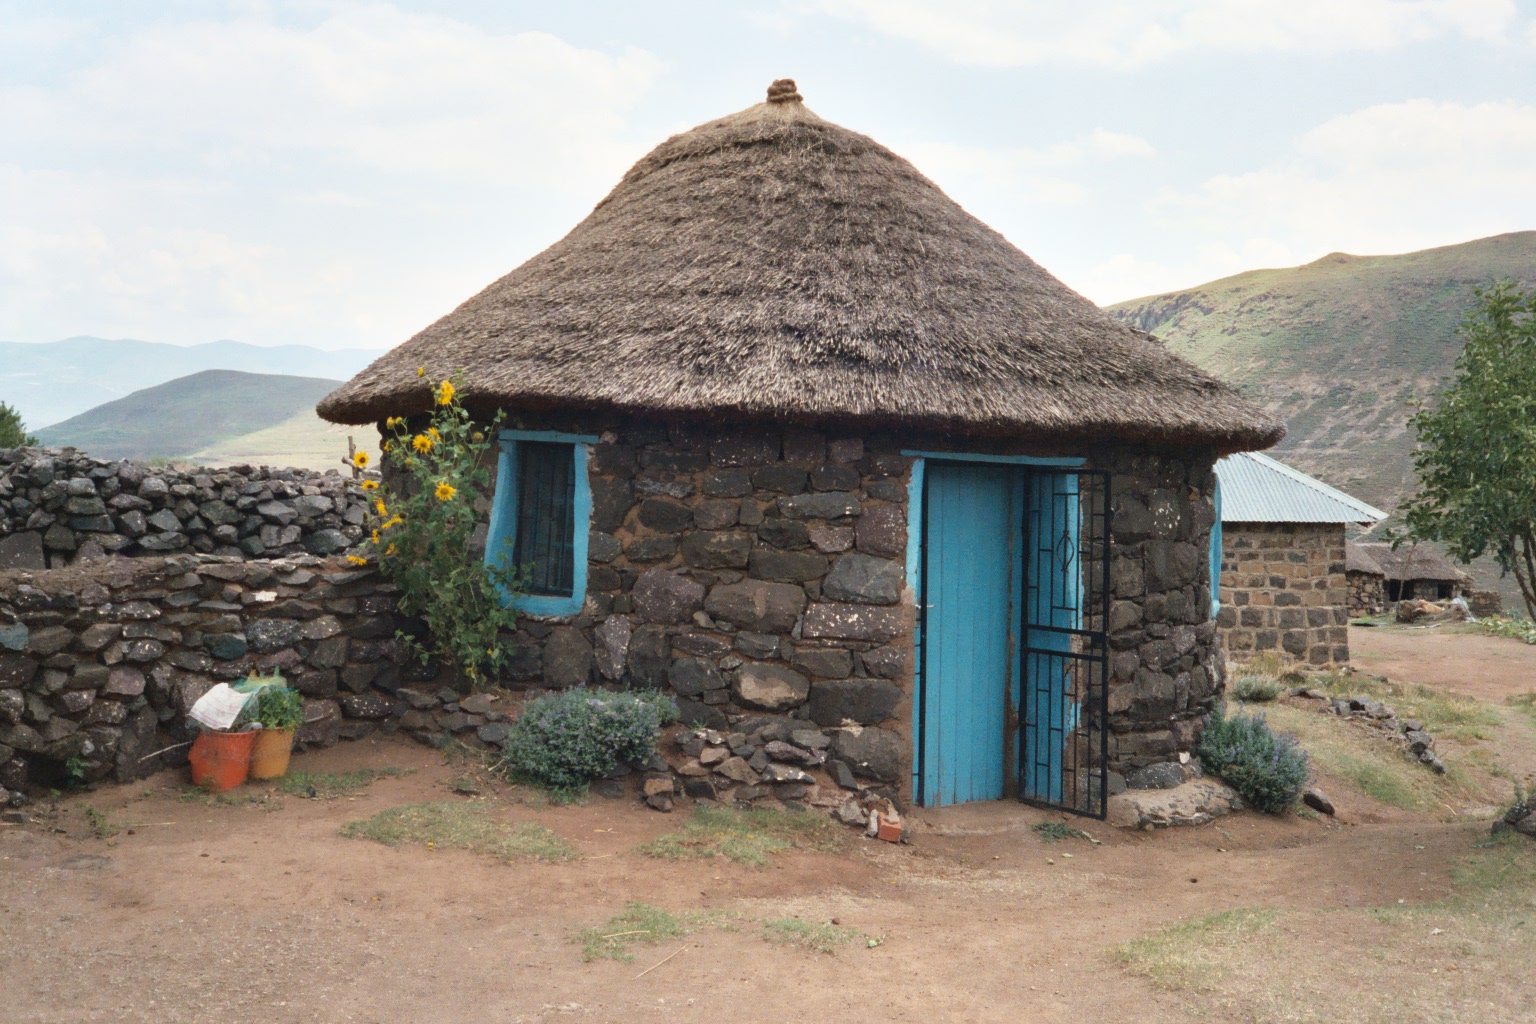 Resulta ng larawan para sa Traditional Rondavel house in Lesotho, Africa